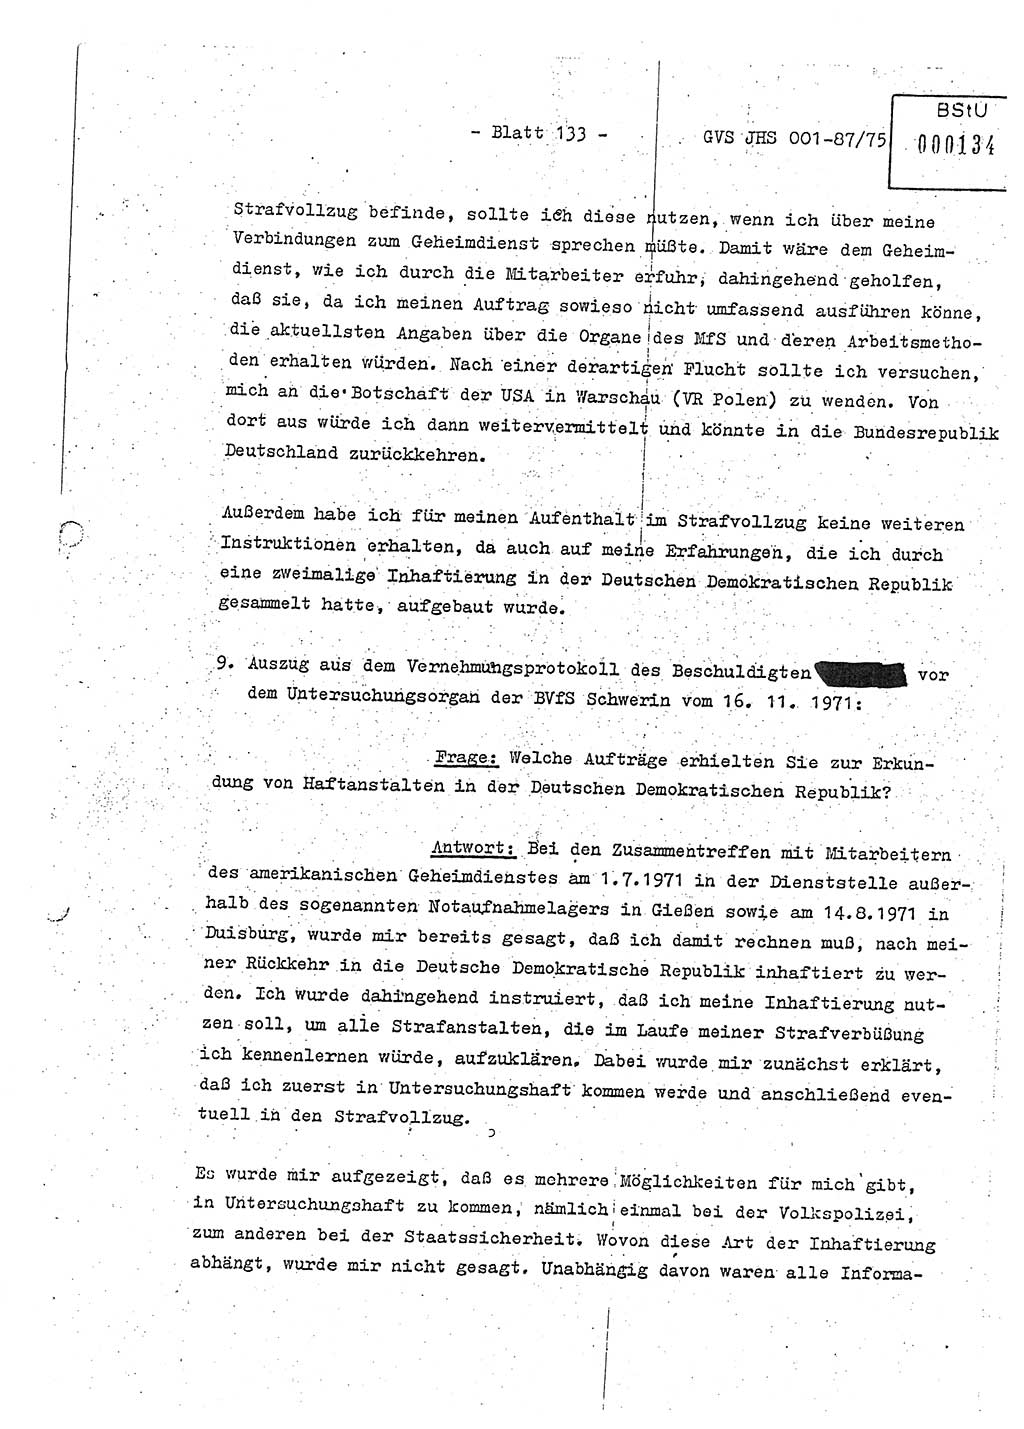 Diplomarbeit Hauptmann Volkmar Heinz (Abt. ⅩⅣ), Oberleutnant Lothar Rüdiger (BV Lpz. Abt. Ⅺ), Ministerium für Staatssicherheit (MfS) [Deutsche Demokratische Republik (DDR)], Juristische Hochschule (JHS), Geheime Verschlußsache (GVS) o001-87/75, Potsdam 1975, Seite 133 (Dipl.-Arb. MfS DDR JHS GVS o001-87/75 1975, S. 133)